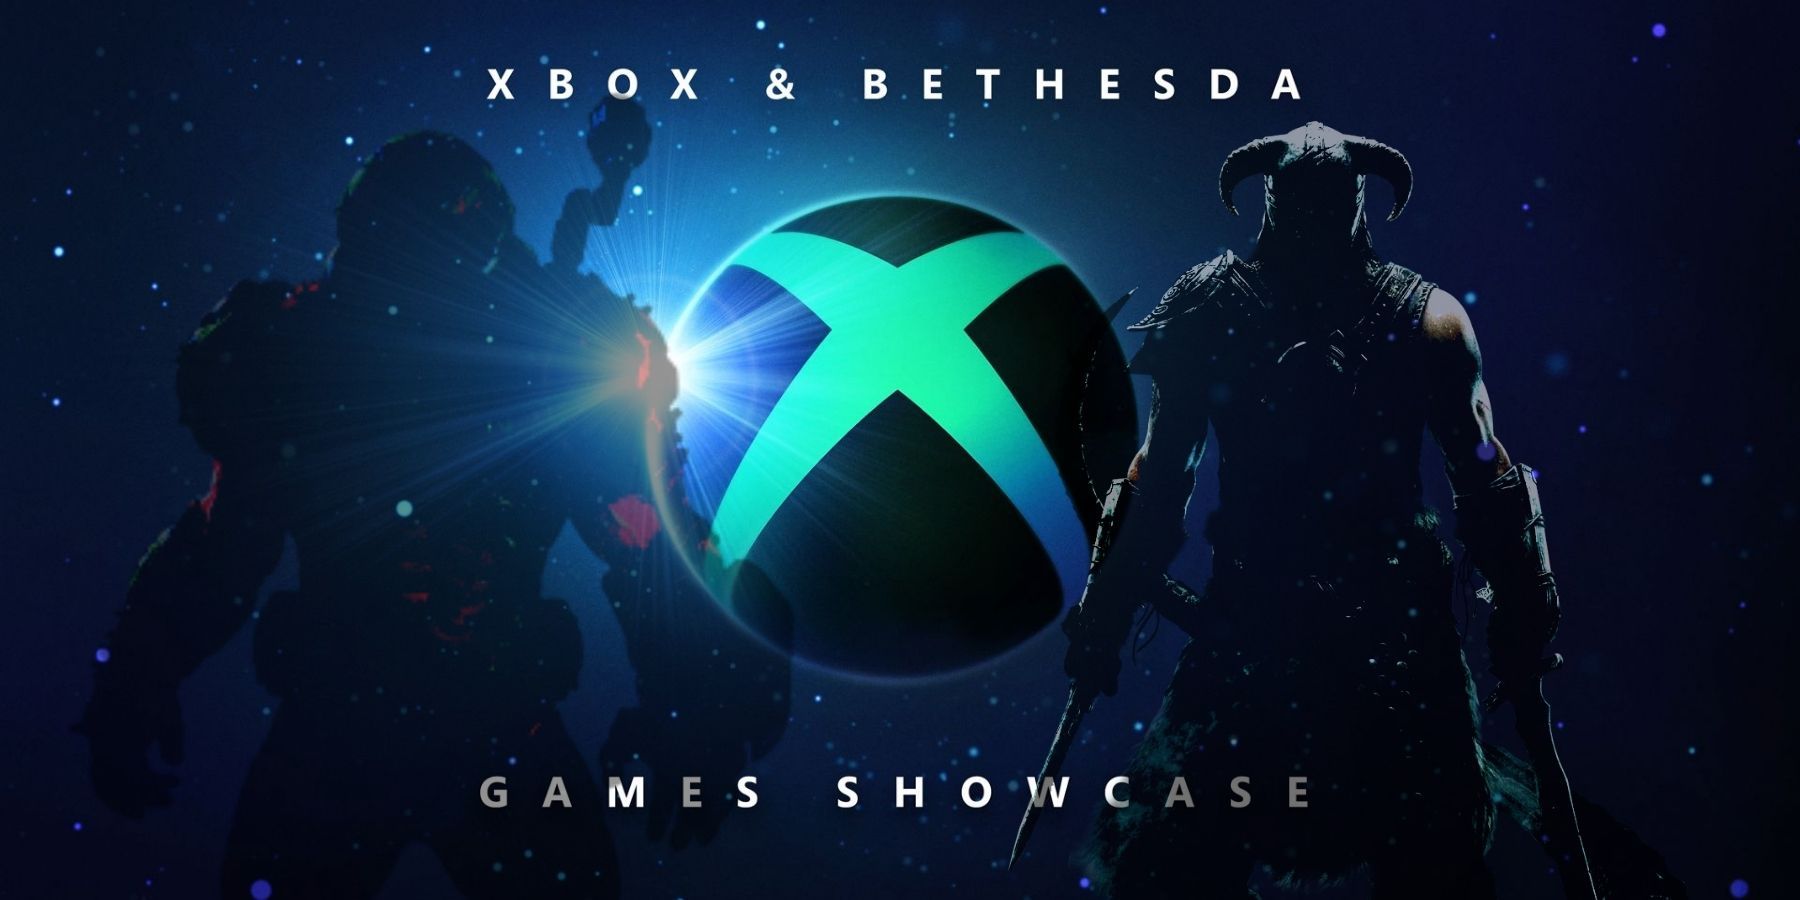 xbox bethesda showcase games predictions gears halo doom wolfenstein starfield